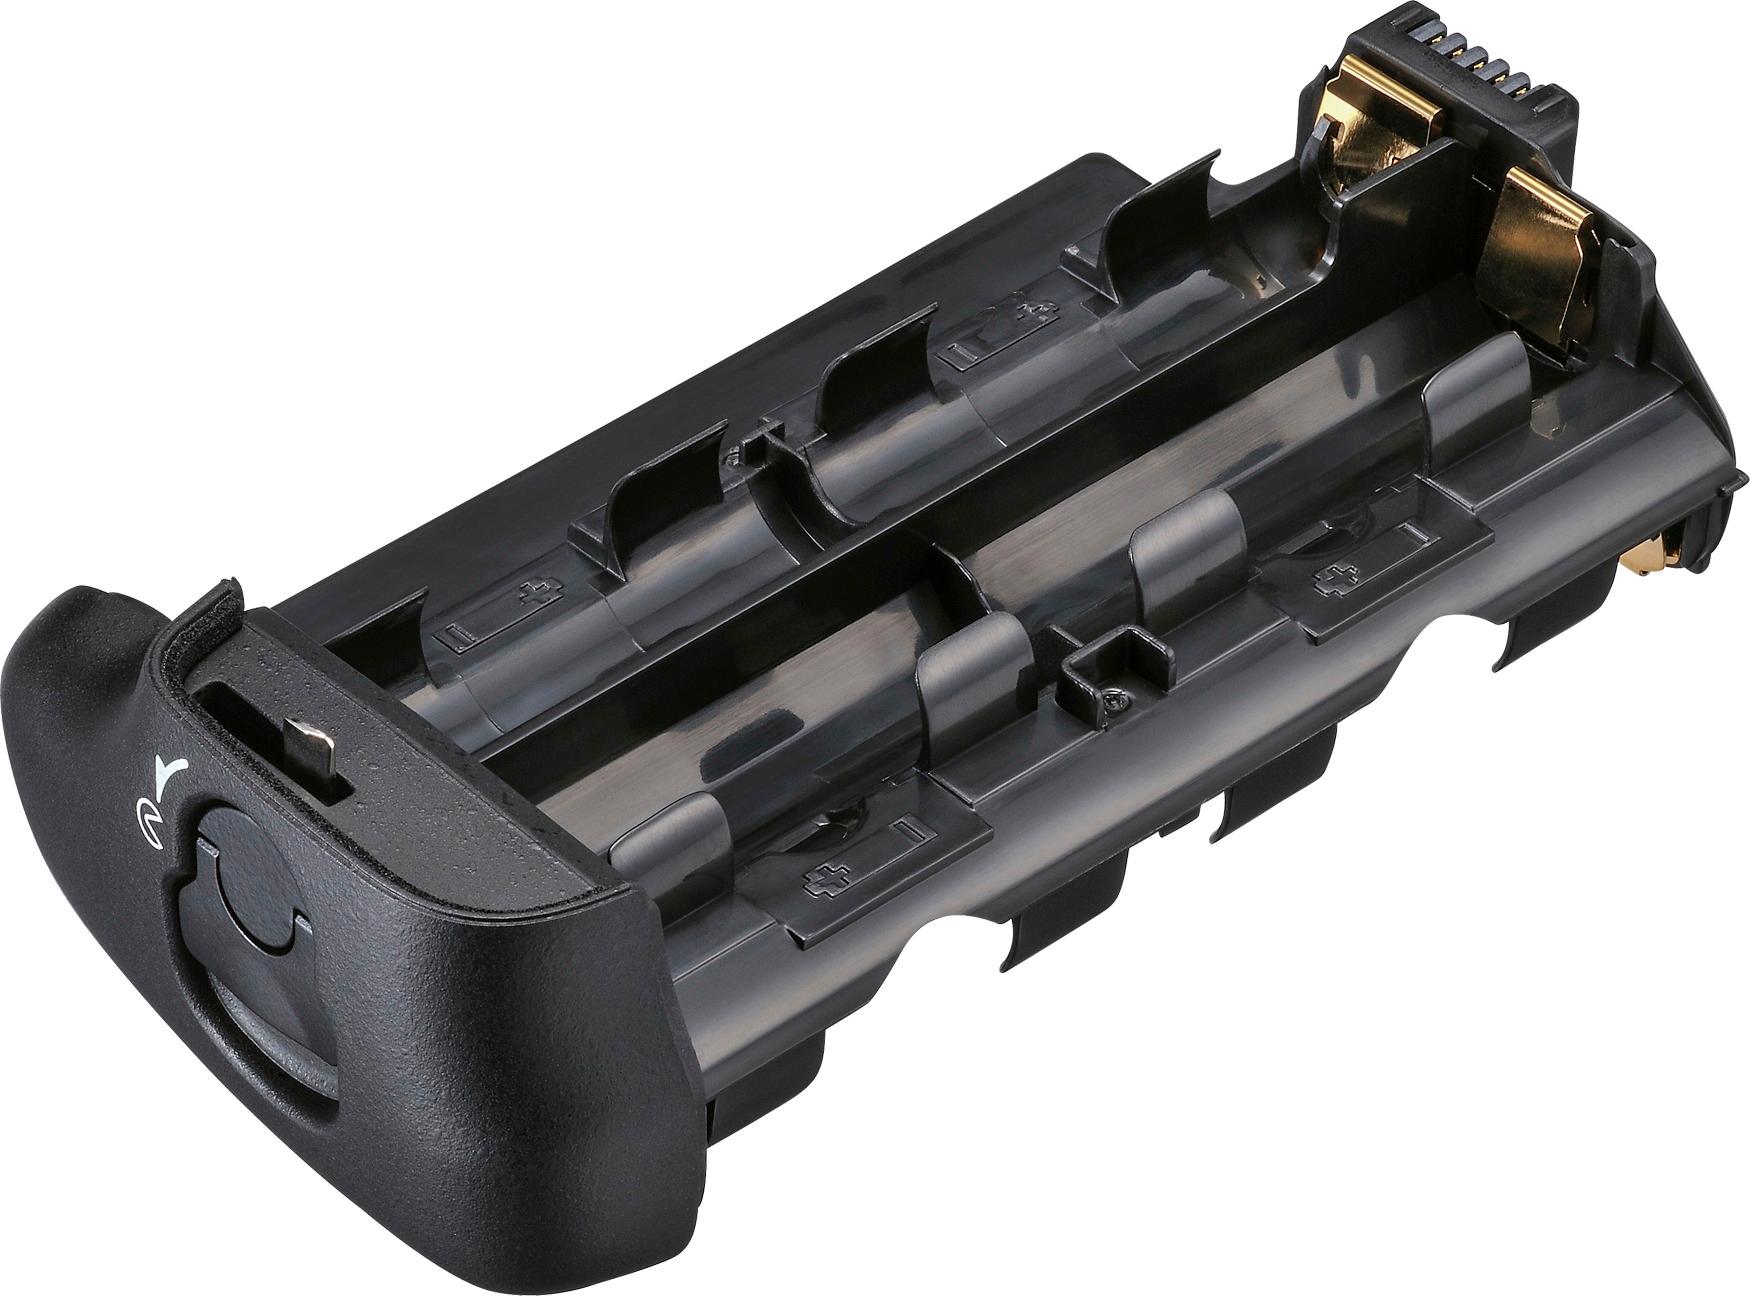 Nikon MB-D16 Multi Power Battery Pack for the Digital SLR Camera Black 27154 Best Buy